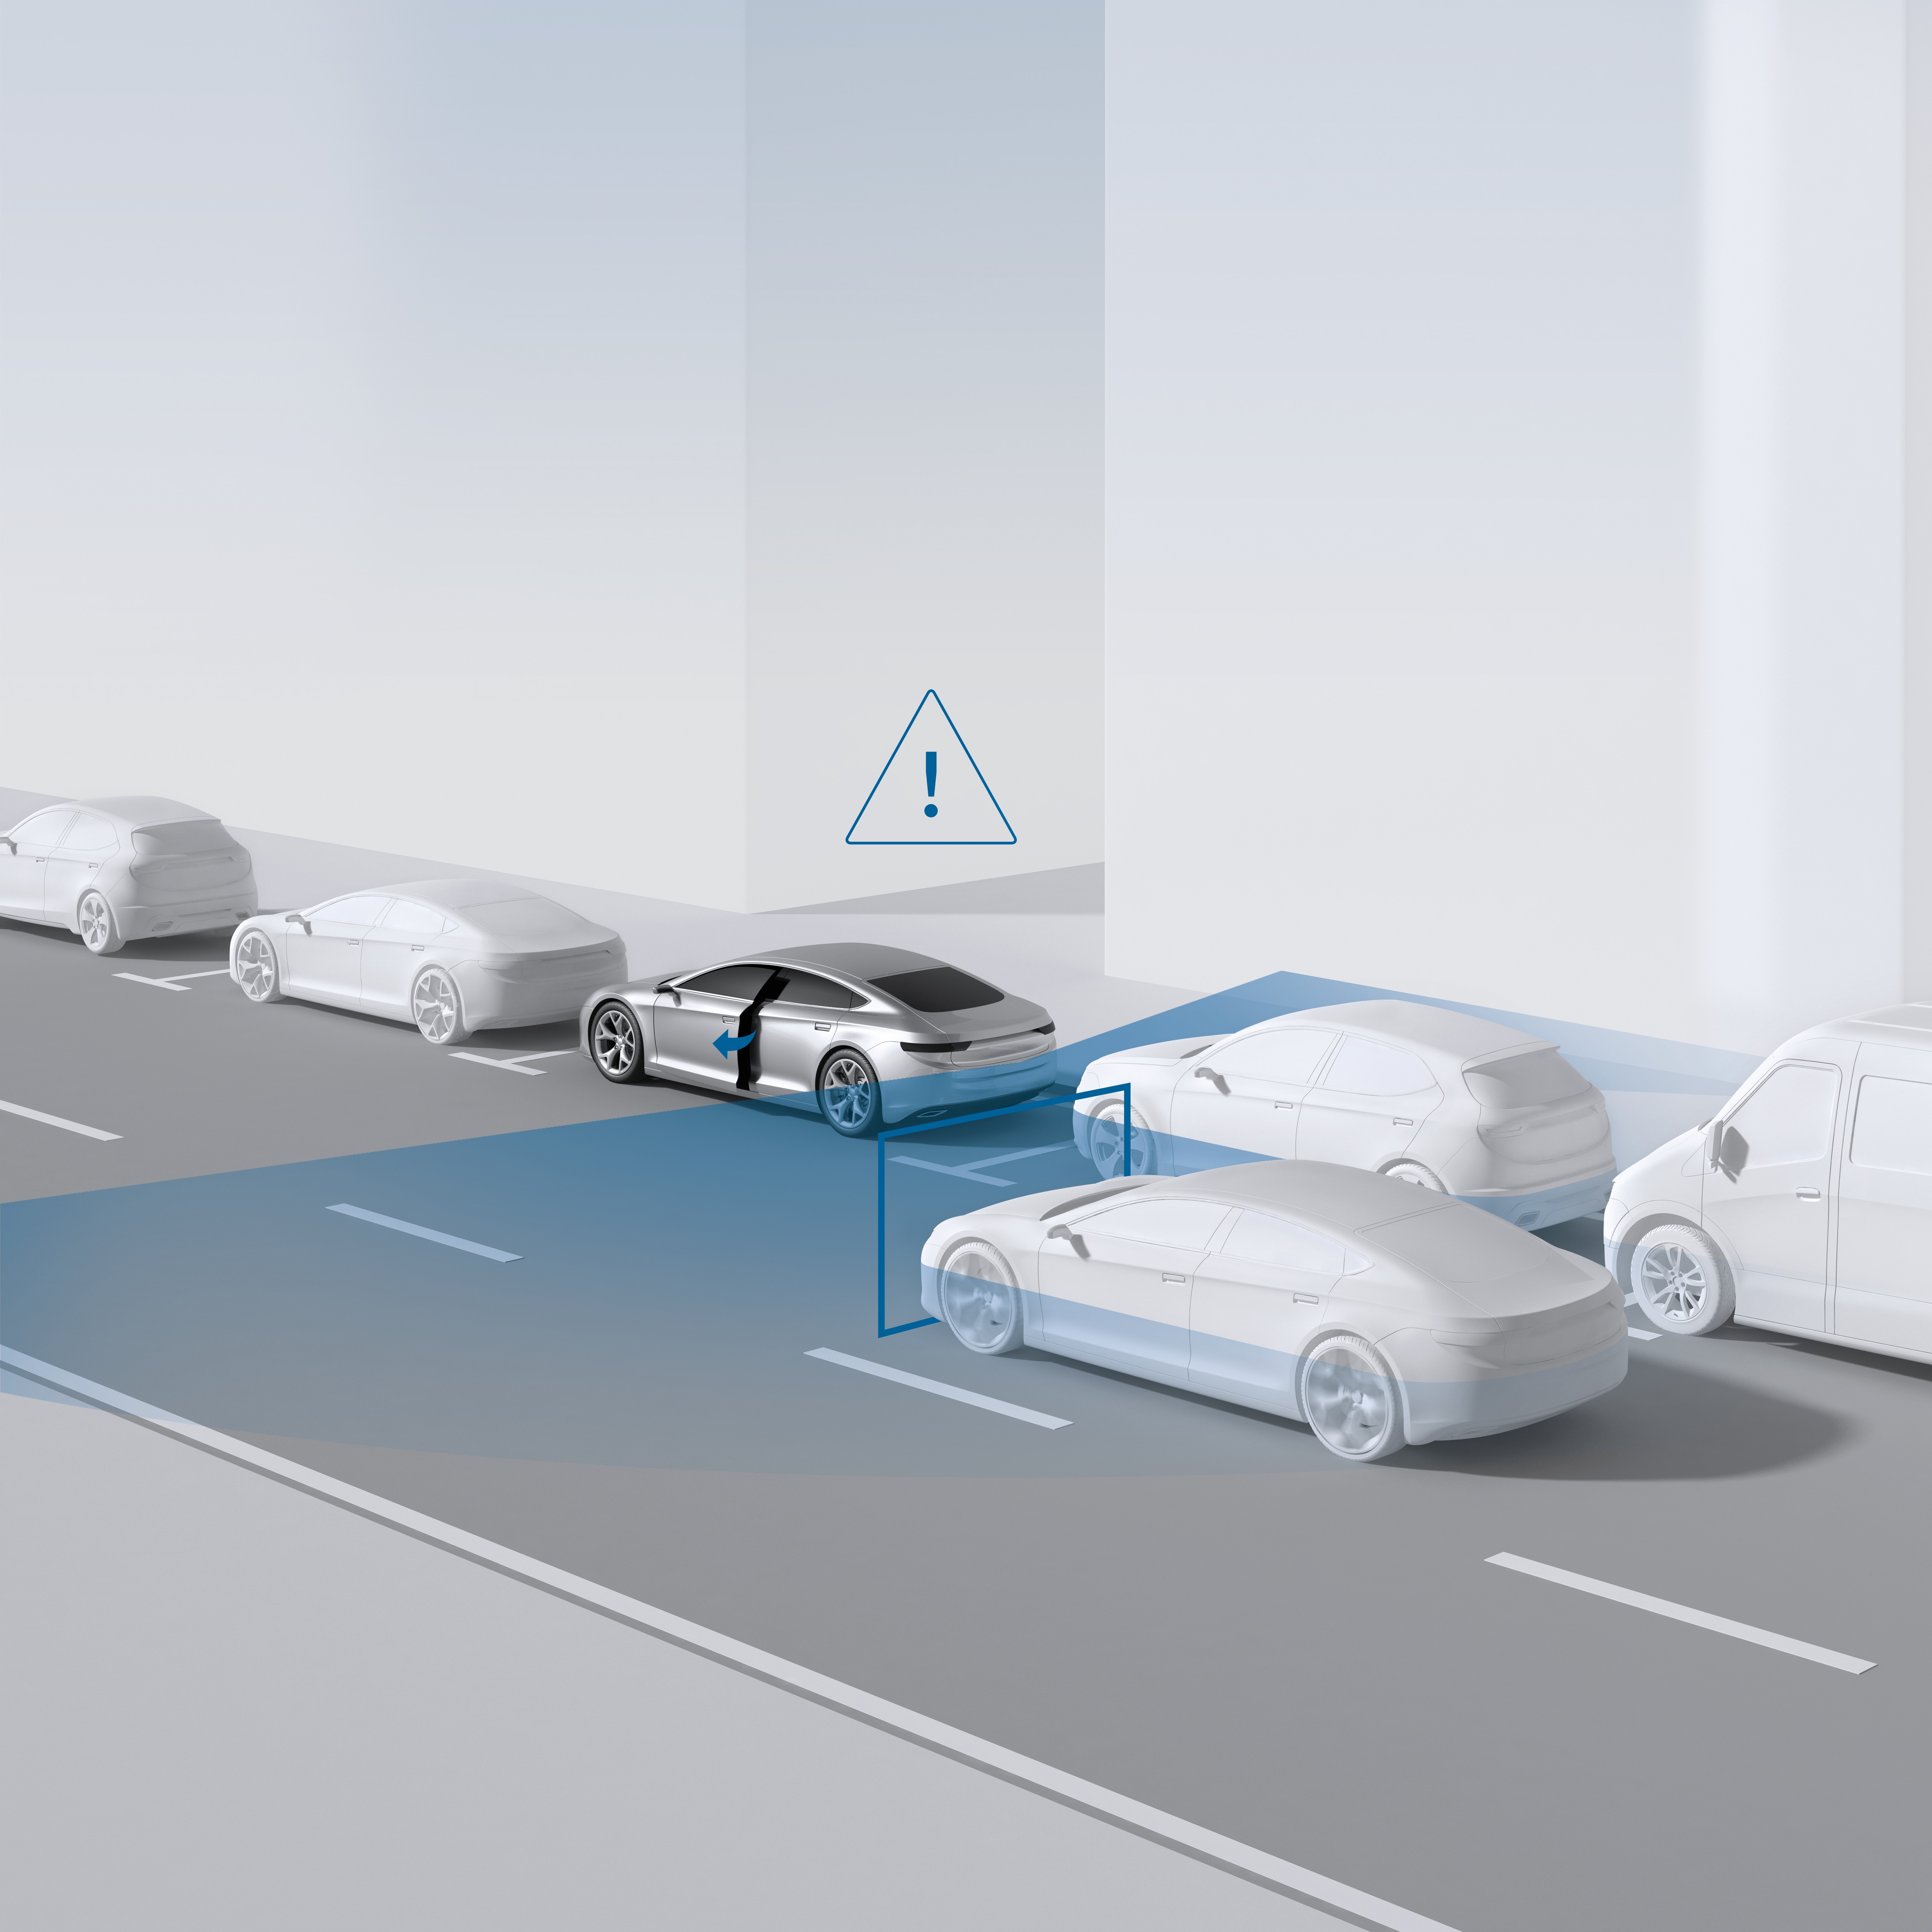  Frenata di emergenza in due battiti di ciglia: Bosch lancia nuovi sistemi di assistenza alla guida